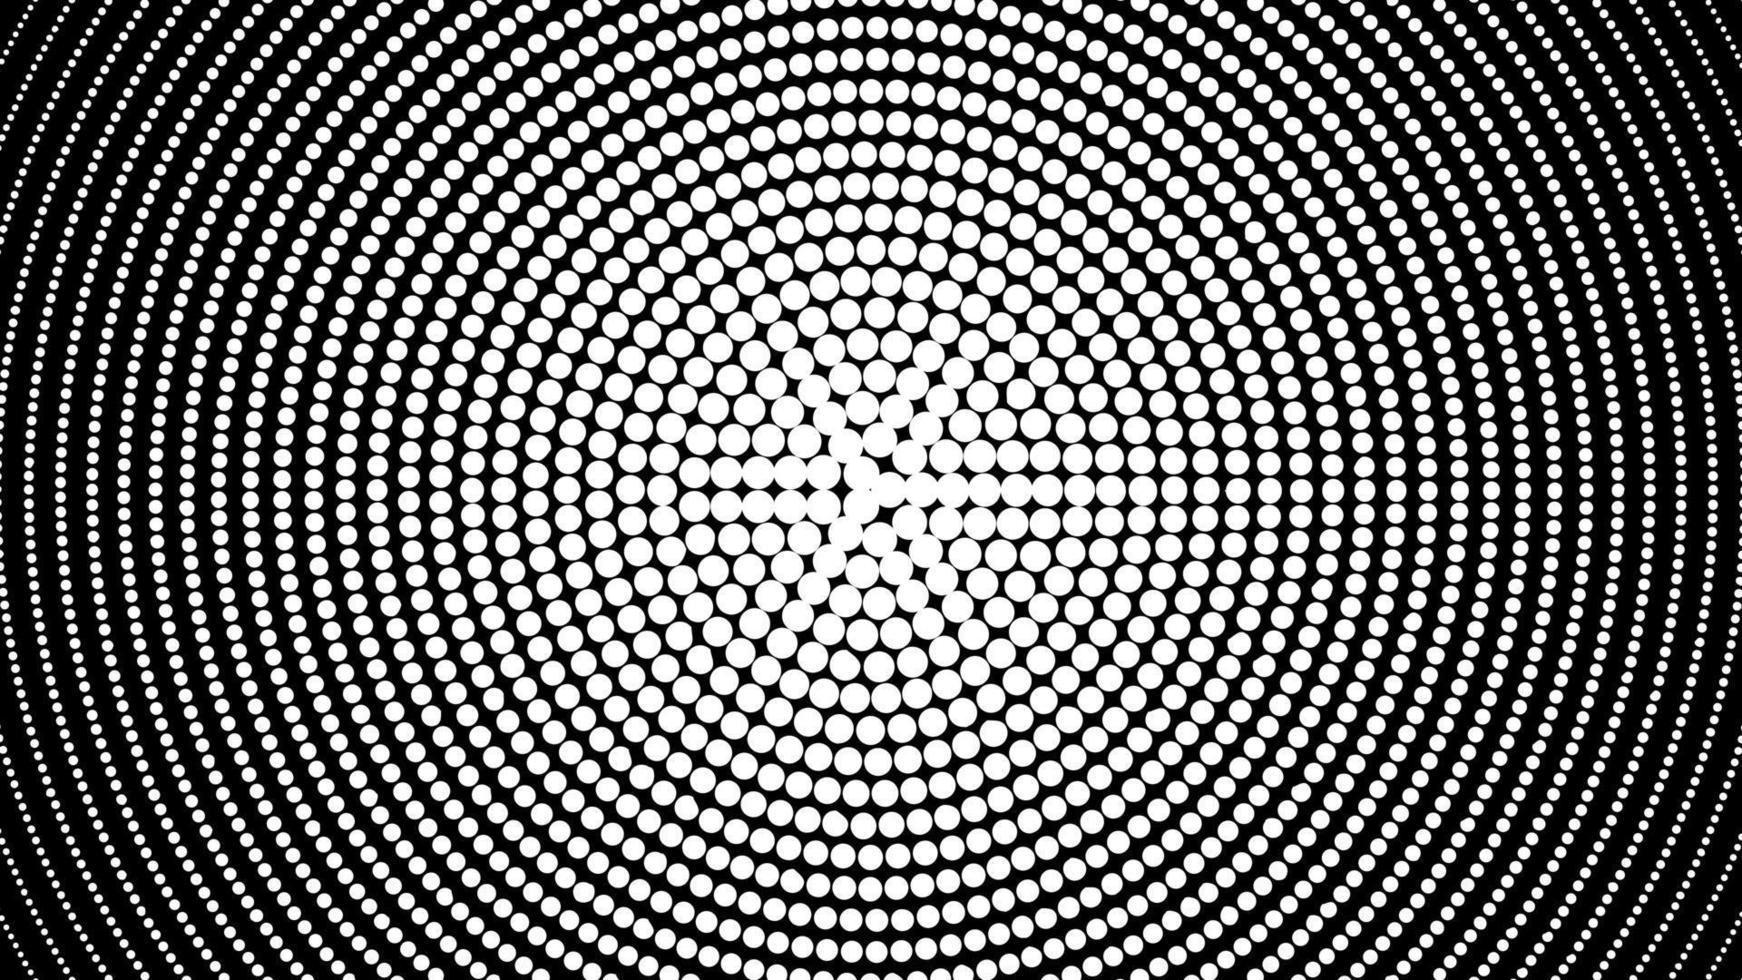 vortex en spirale en demi-teinte noir et blanc. fond monochrome avec illusion de mouvement de cercles vecteur